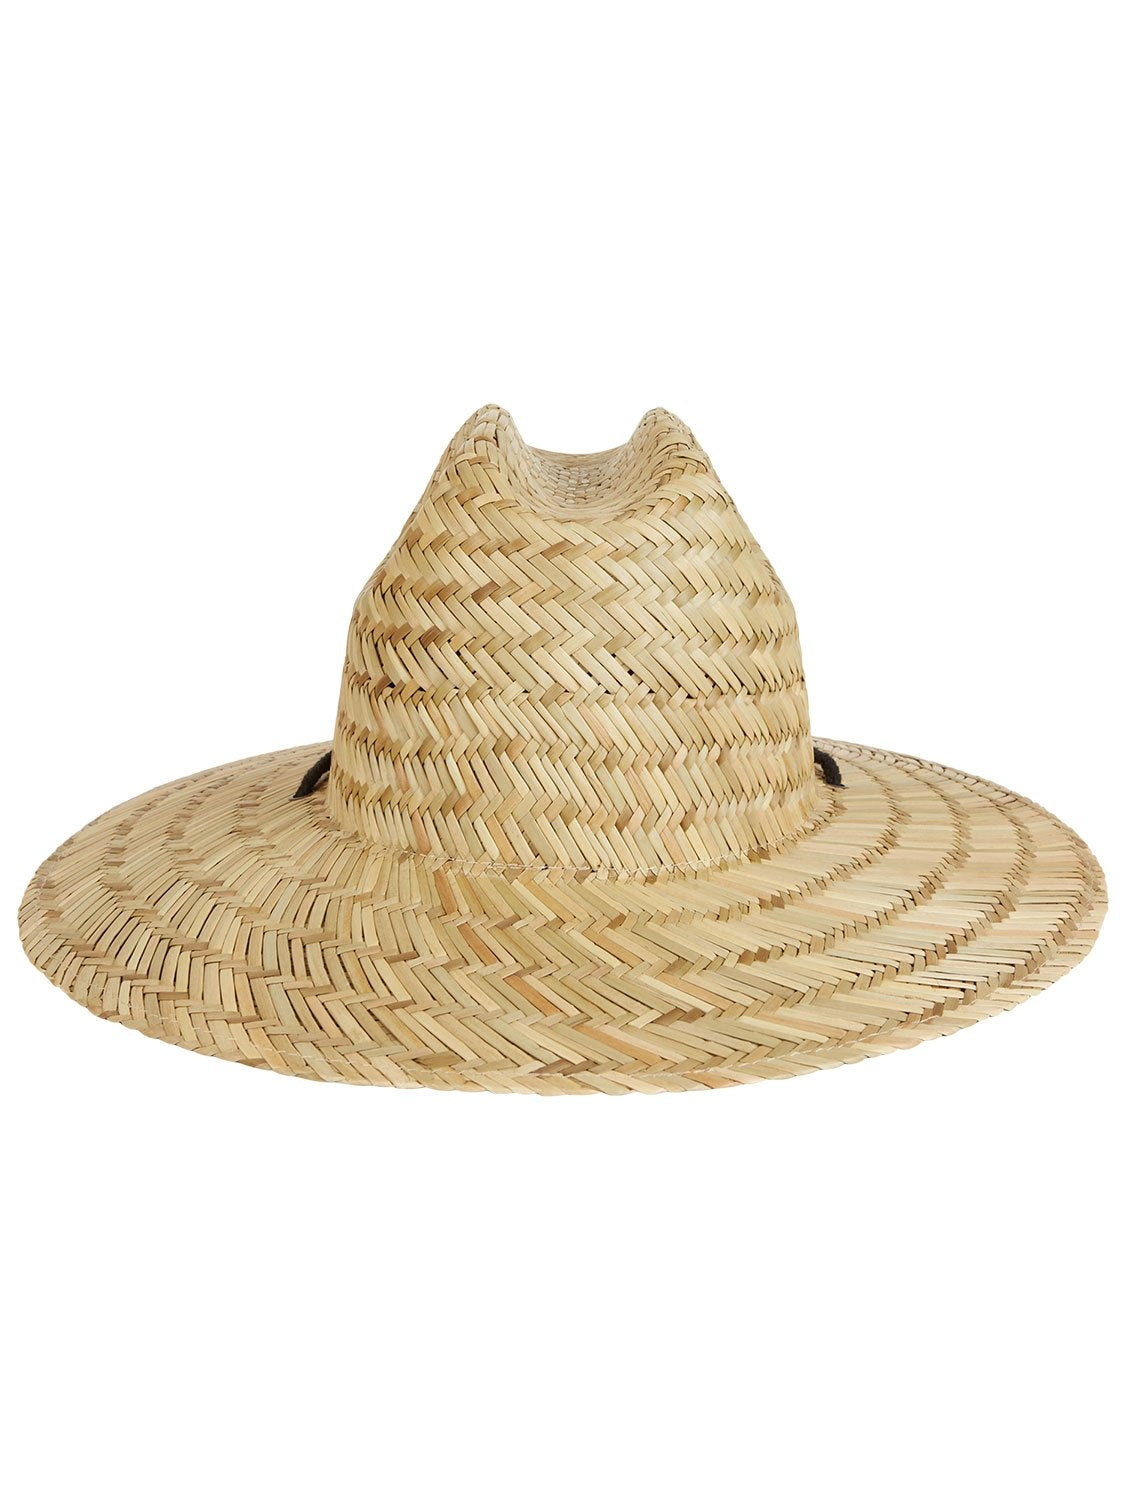 Billabong Men's Tides Straw Hat